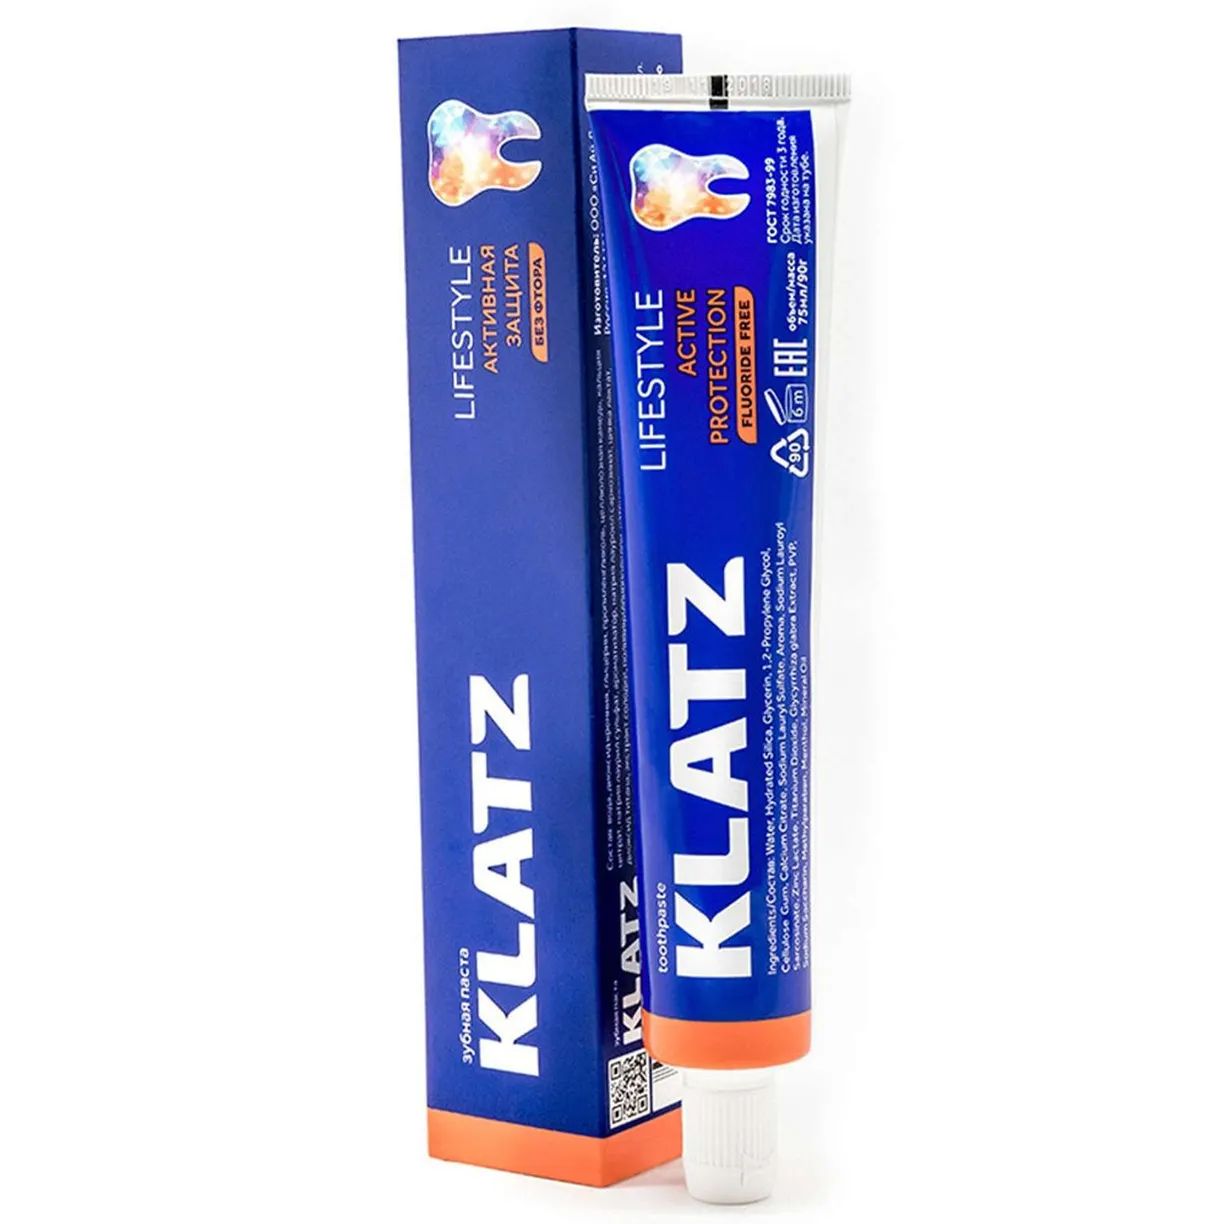 Зубная паста Klatz LIFESTYLE Активная защита без фтора 75 мл зубная паста klatz lifestyle активная защита без фтора 75 мл